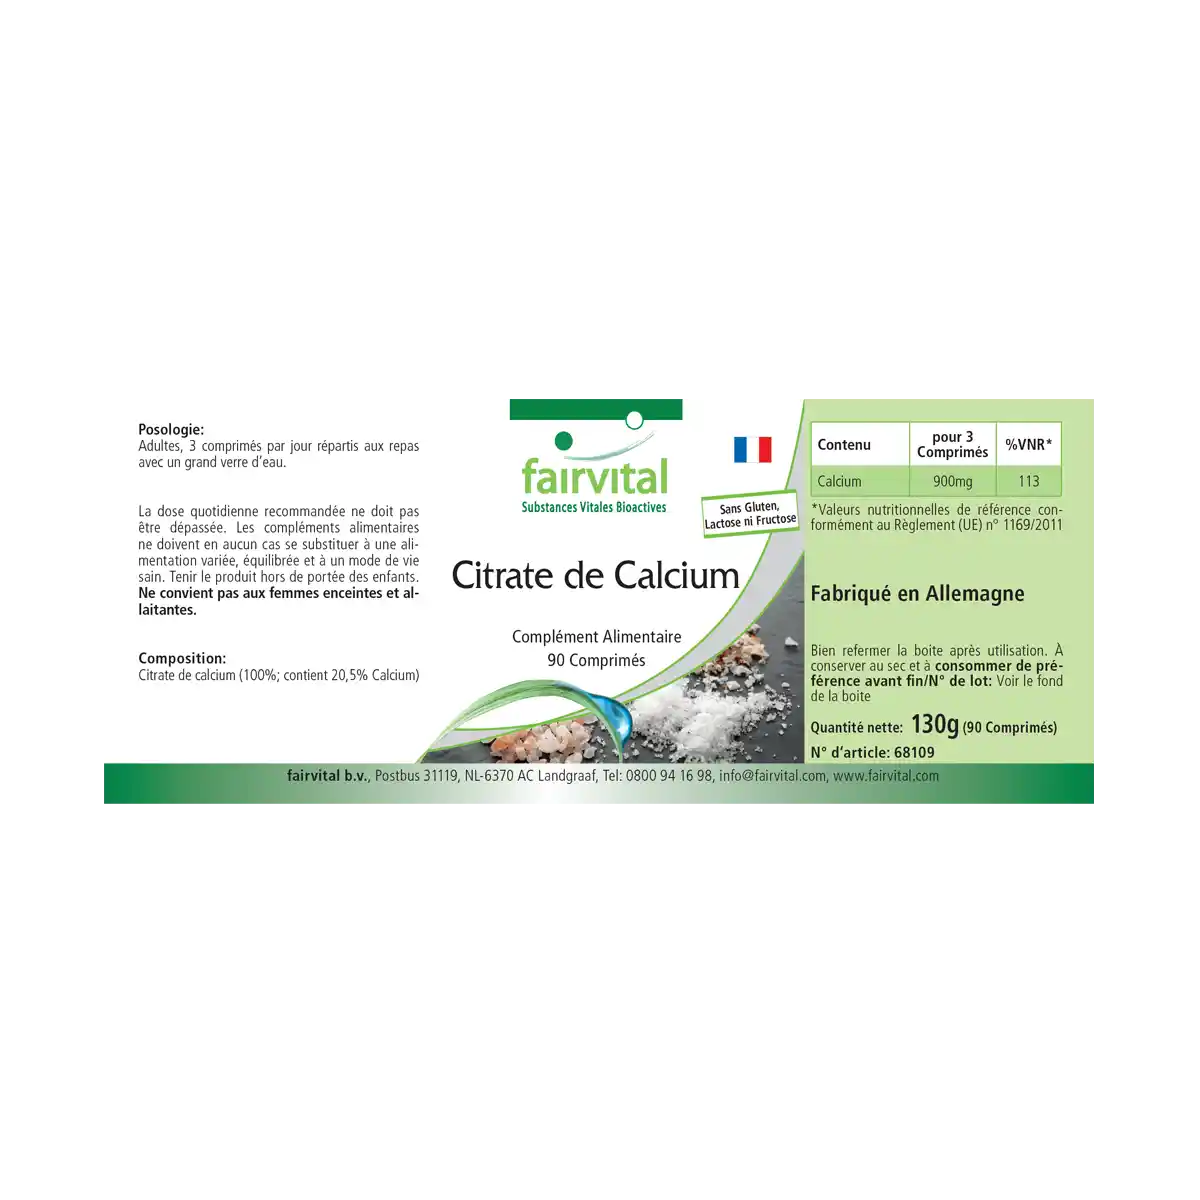 Calcium citrate containing 300mg calcium - 90 tablets